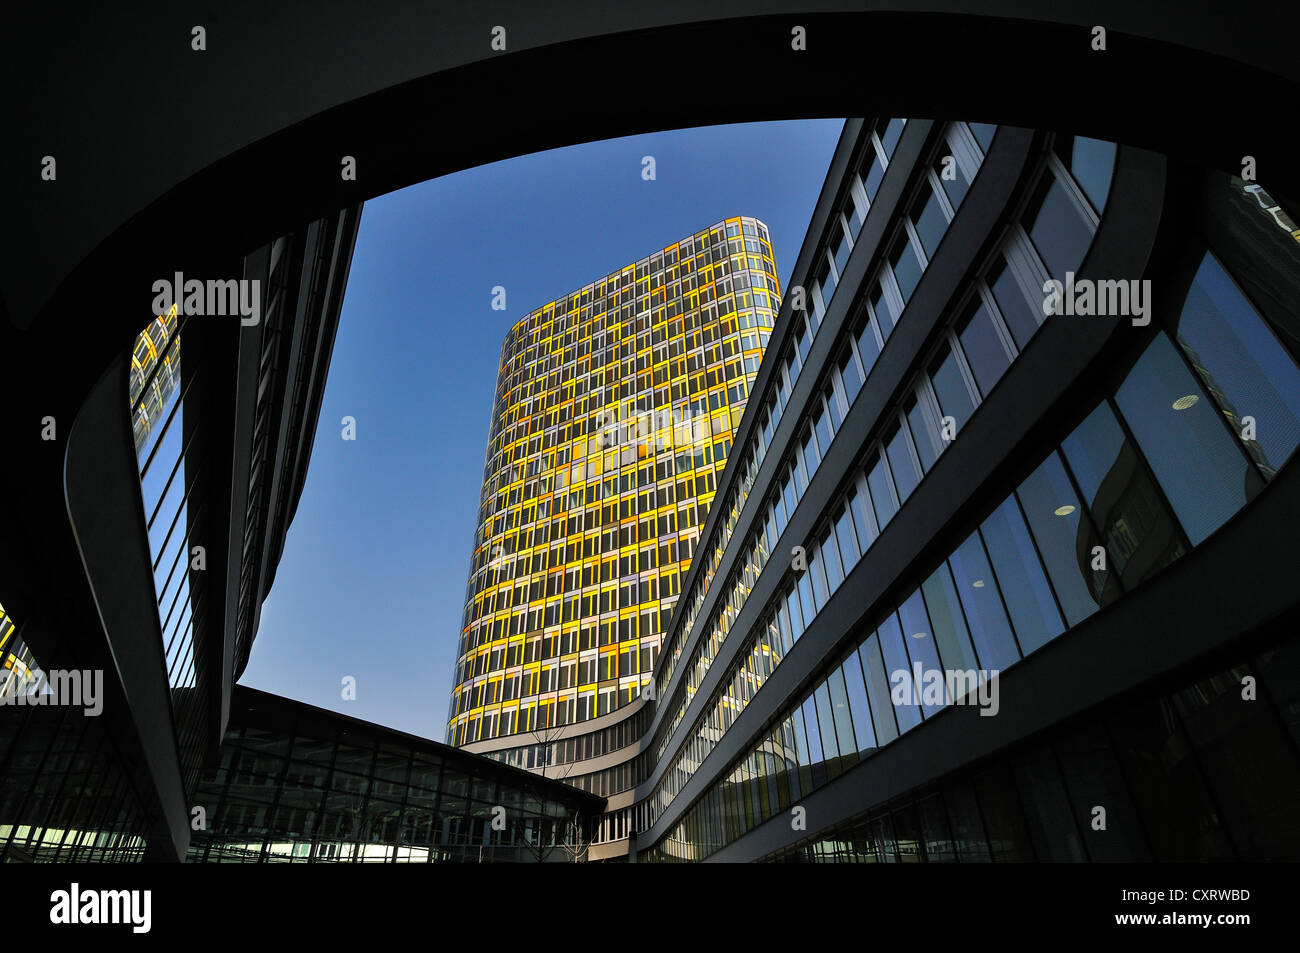 Le nouveau siège de l'ADAC, le club automobile allemand, Hansastrasse street 23-25, Munich, Bavaria, Germany, Europe Banque D'Images